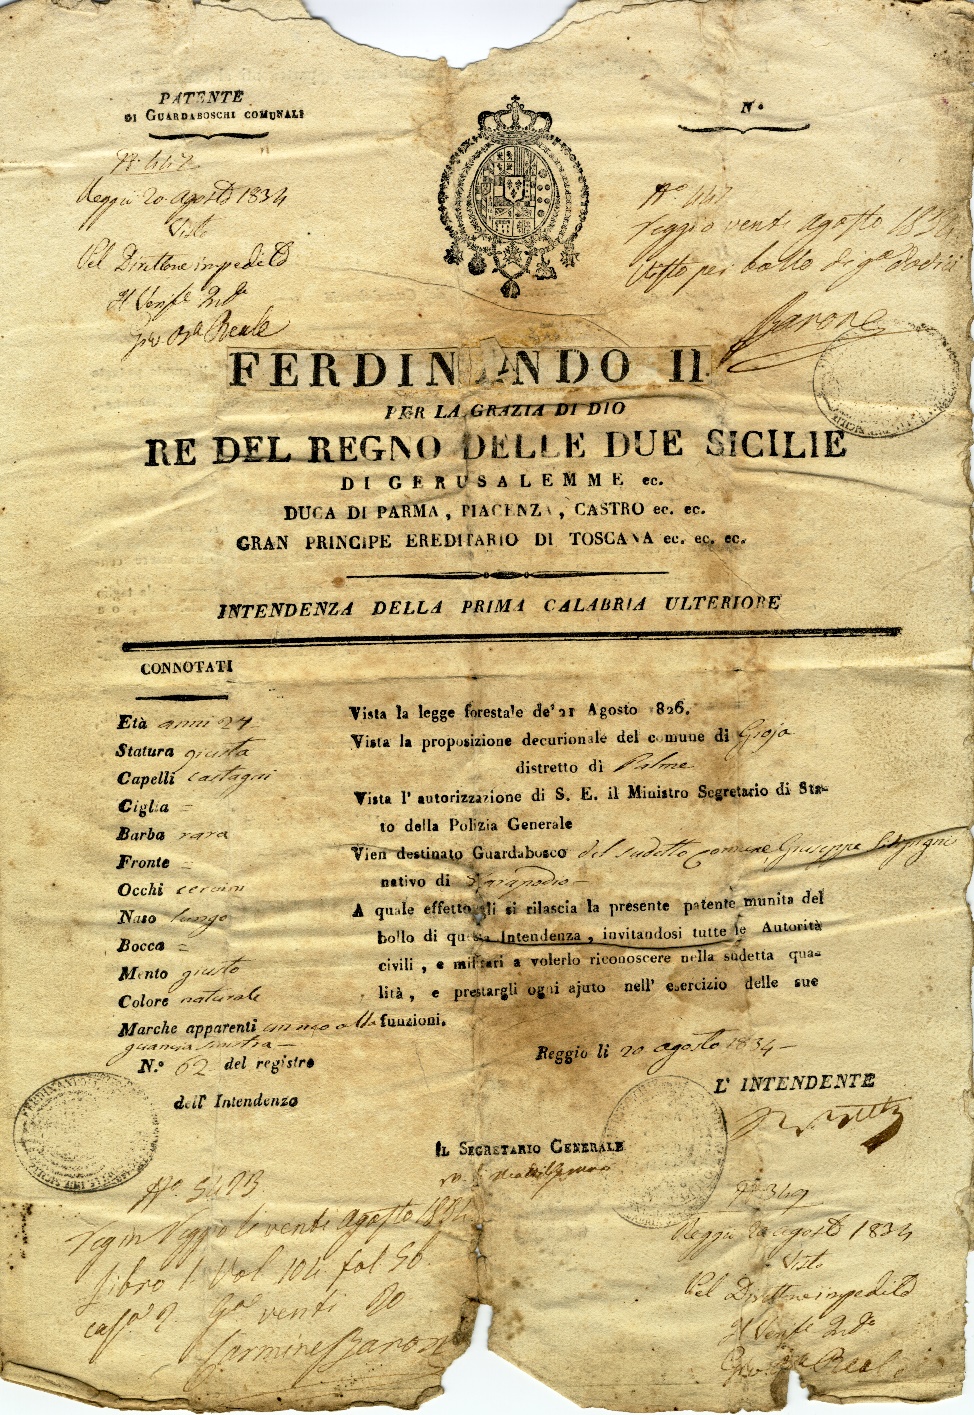 Patente guardaboschi ASRC, Prefettura, Inv. 8 b. 61 fasc. 1848